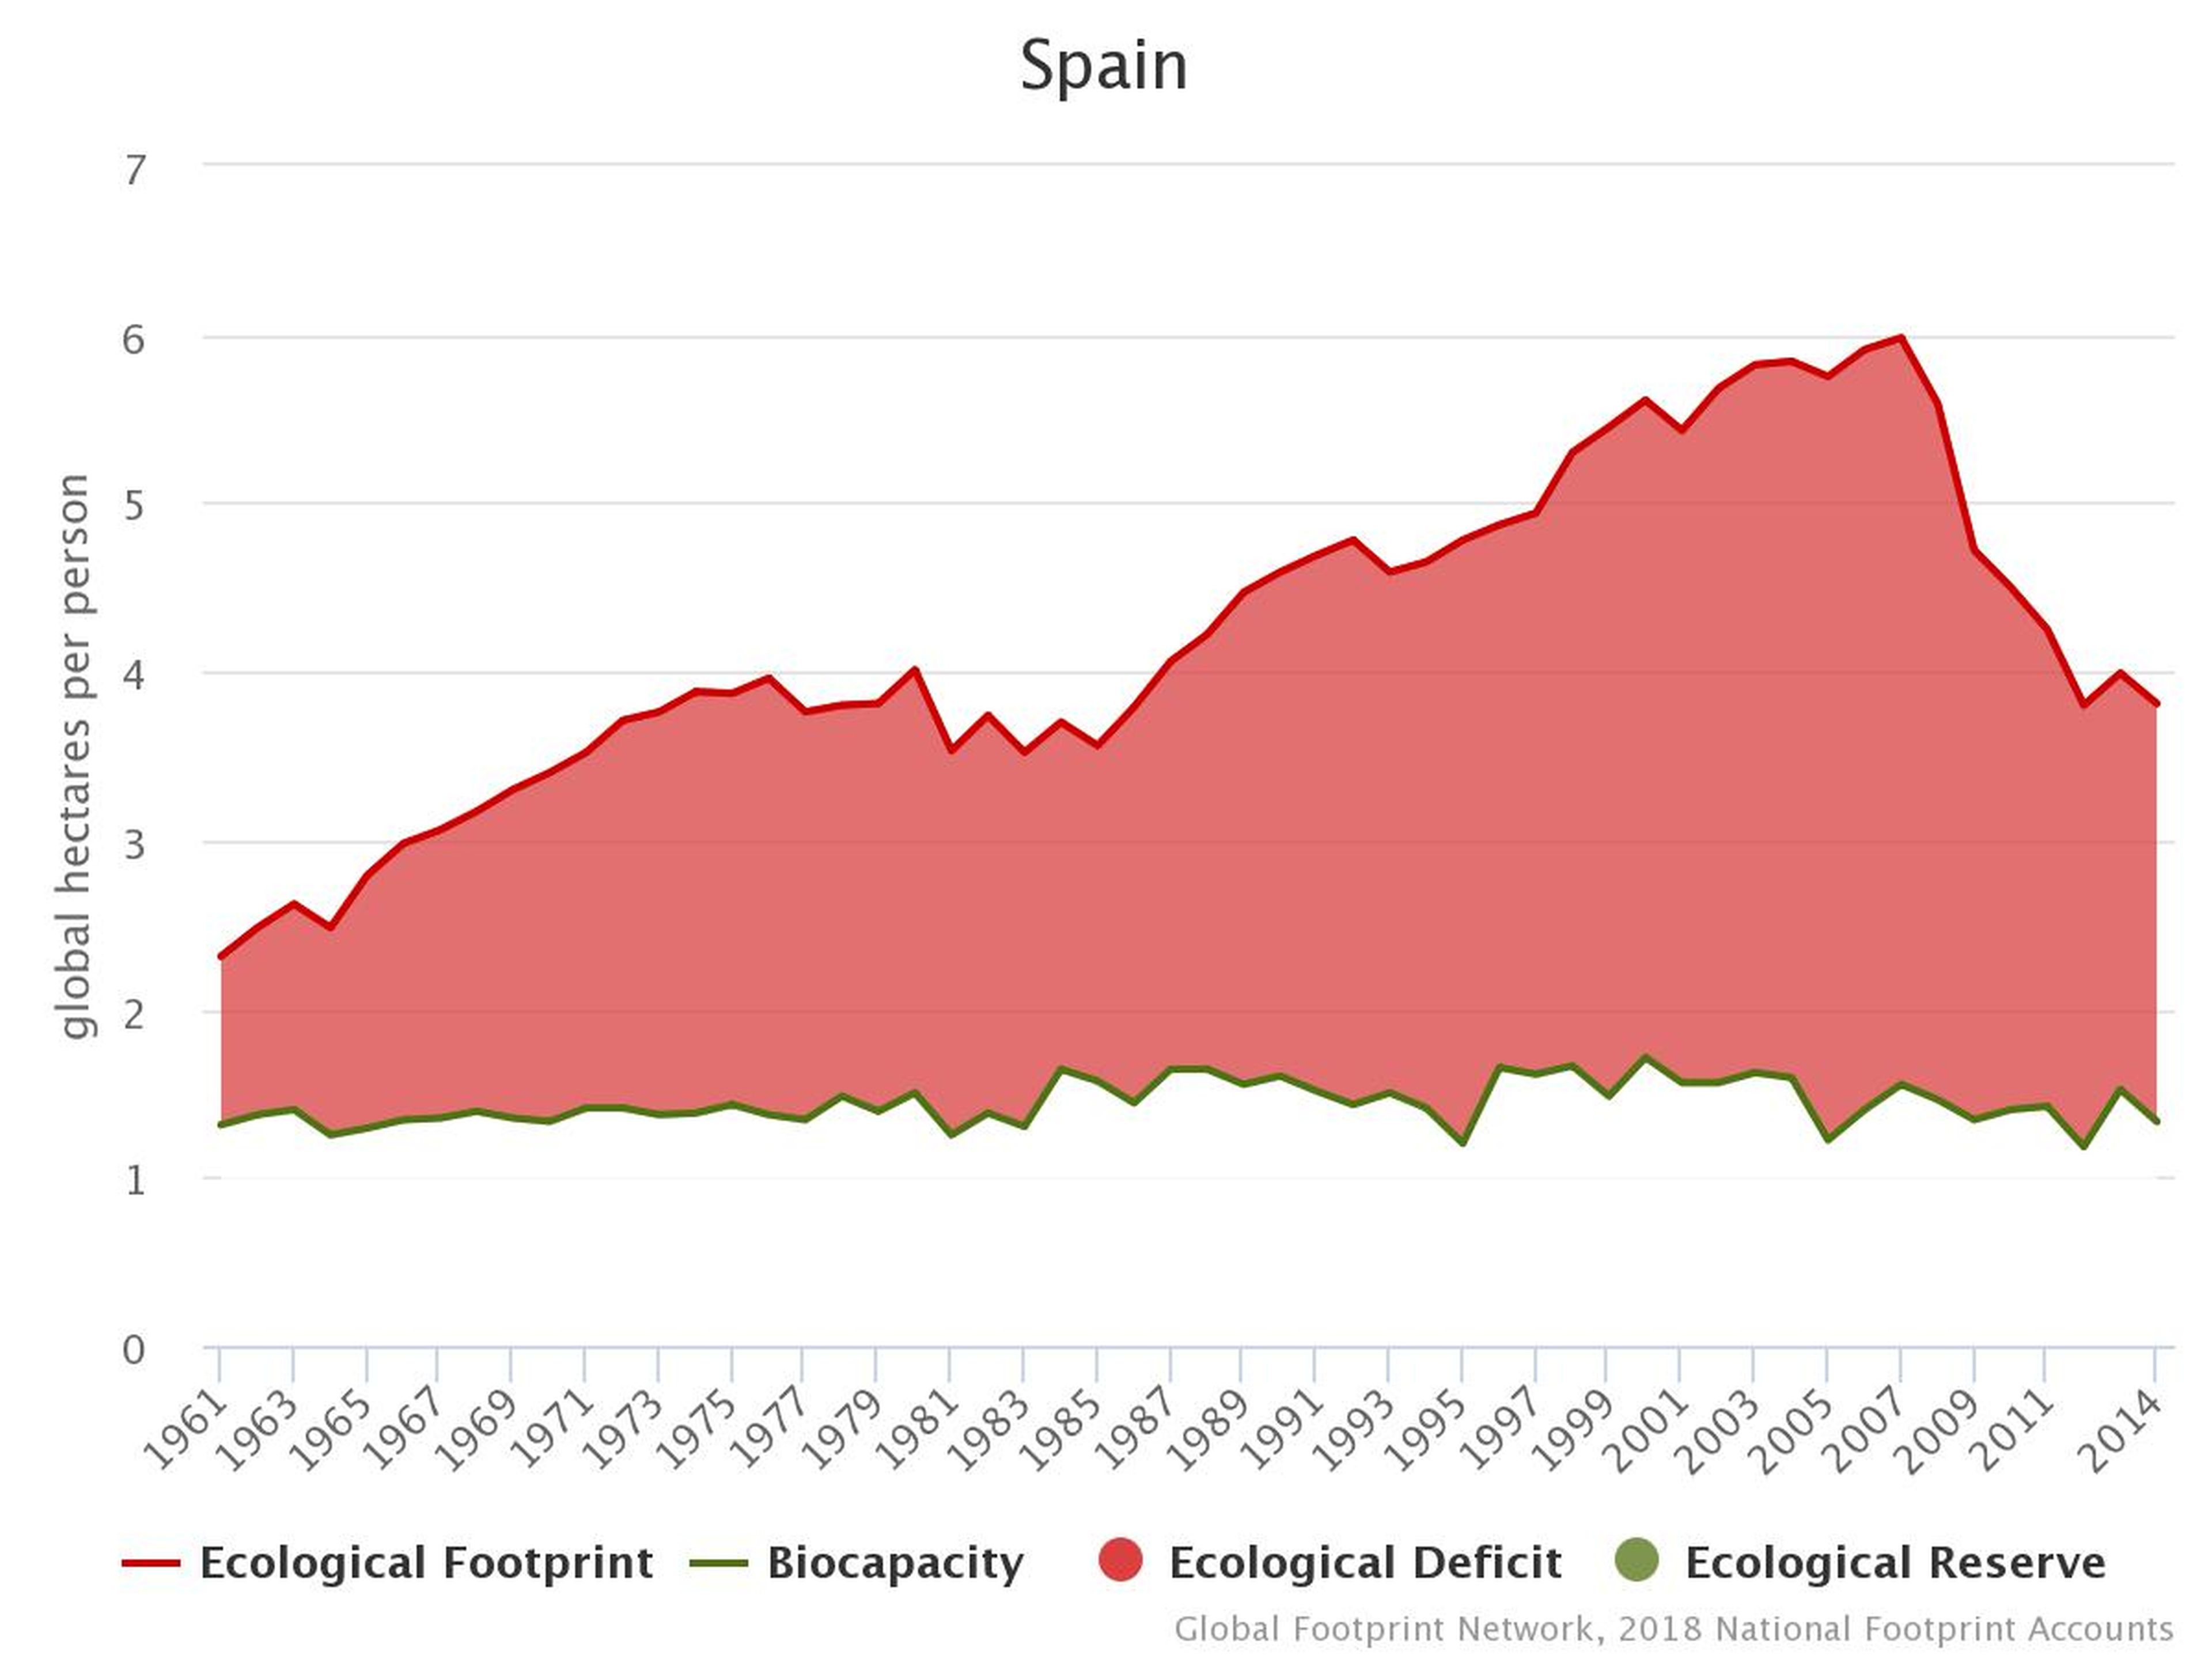 Huella Ecológica vs Biocapacidad en España